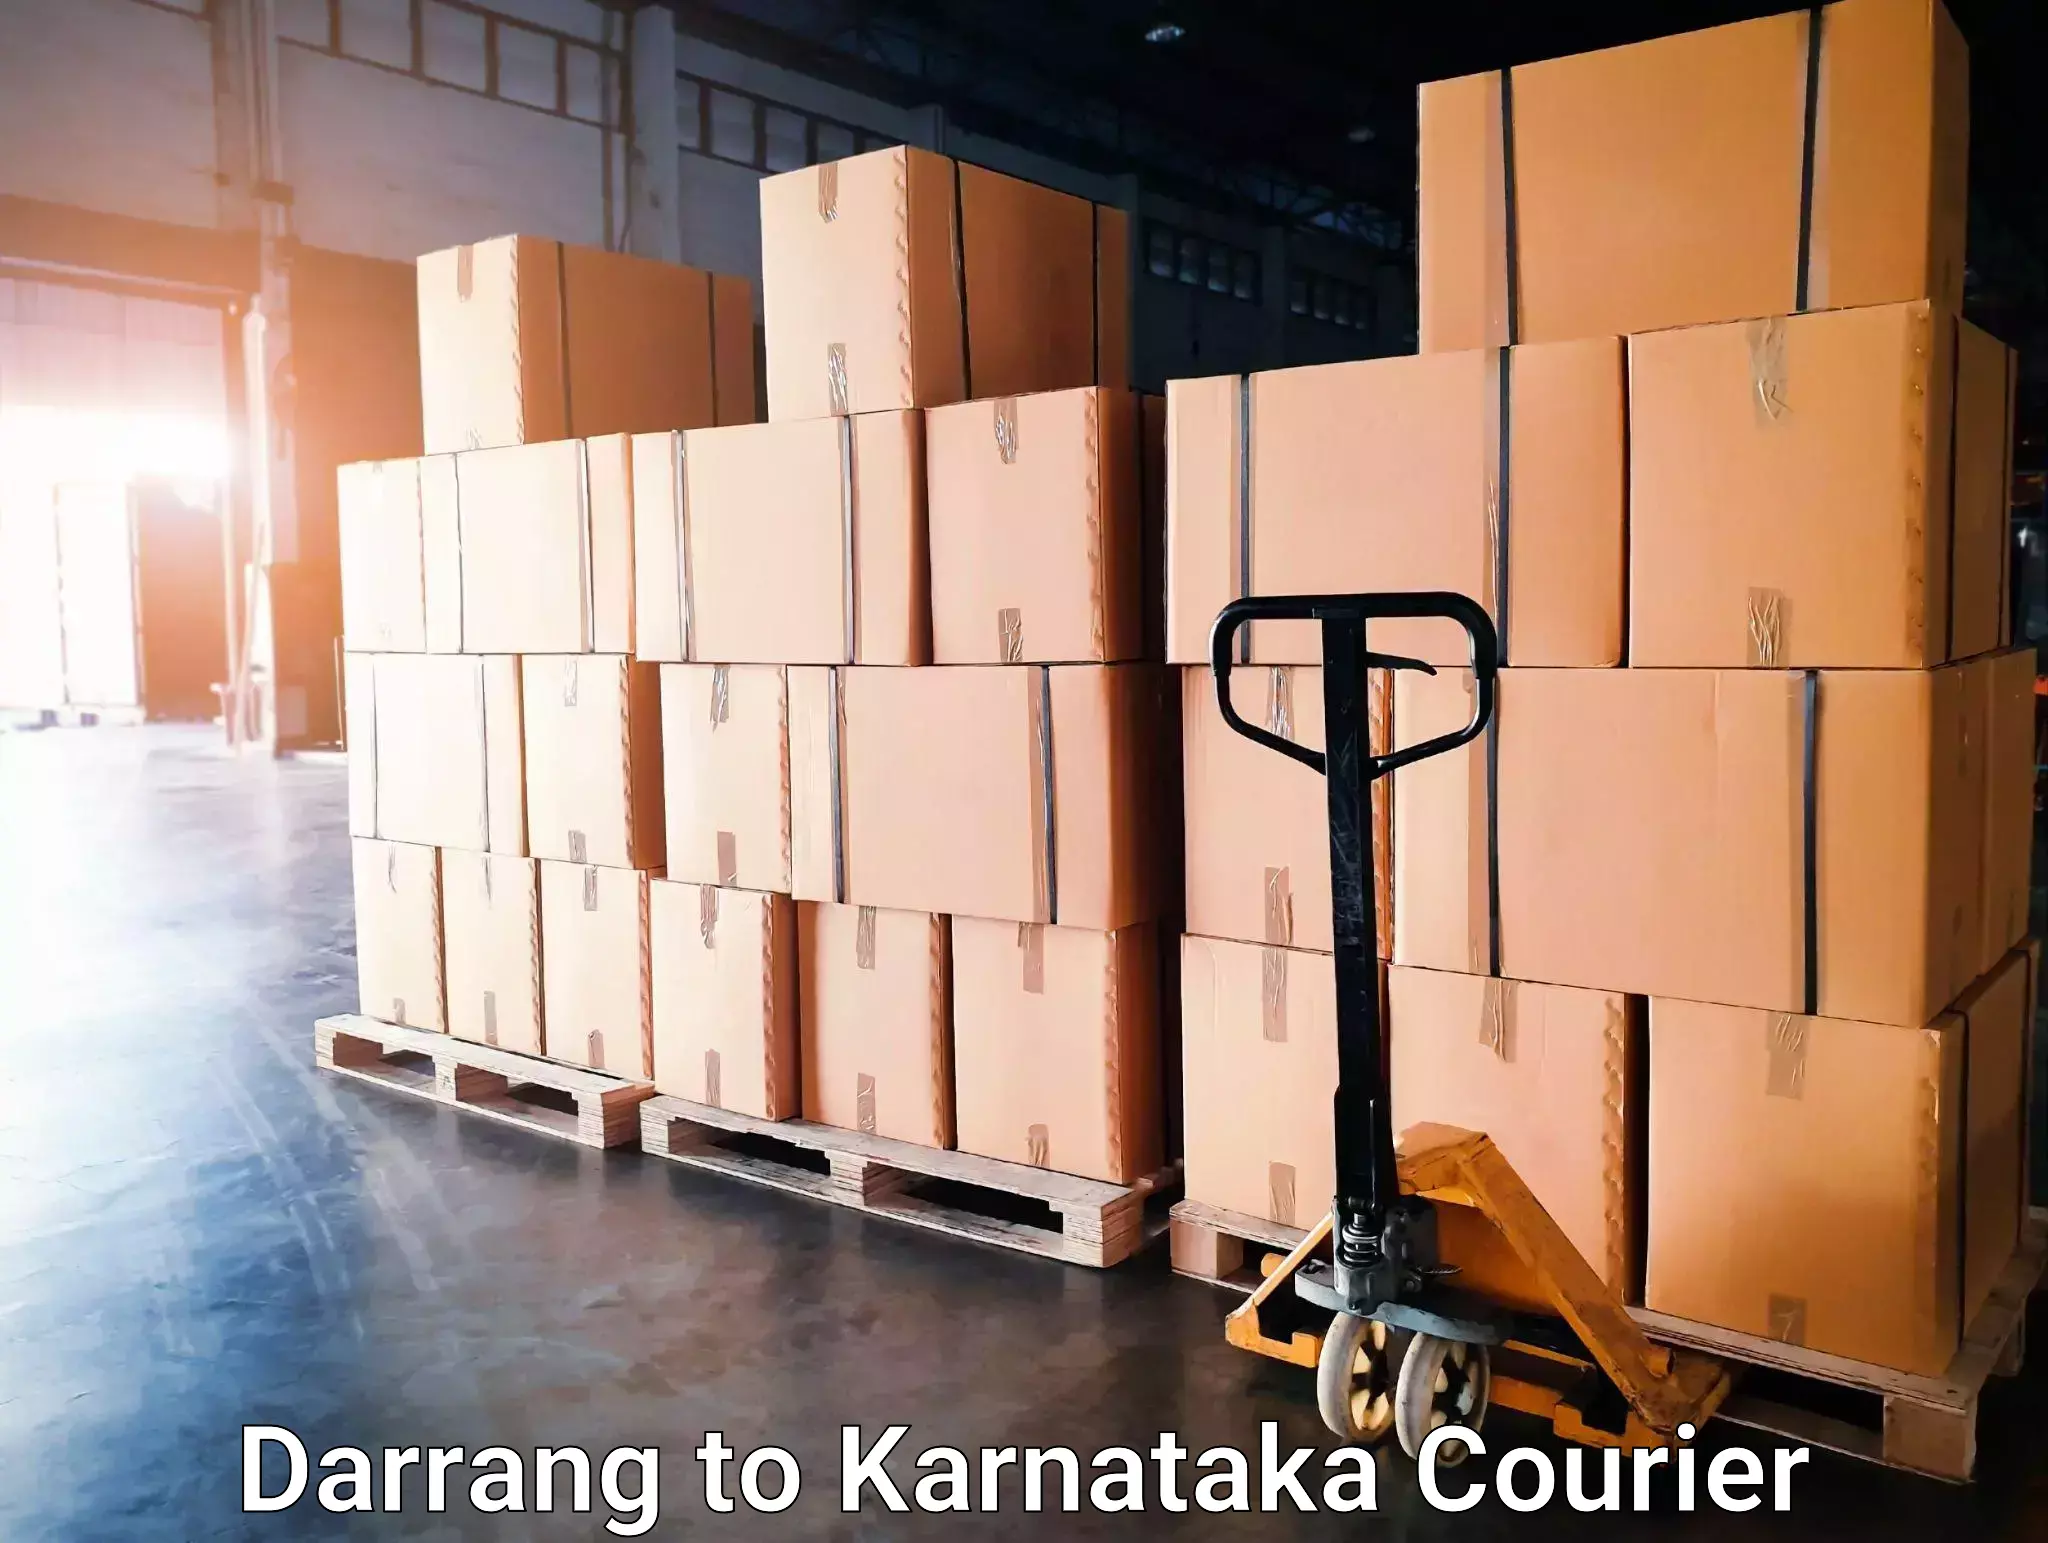 Seamless shipping experience Darrang to Shorapur